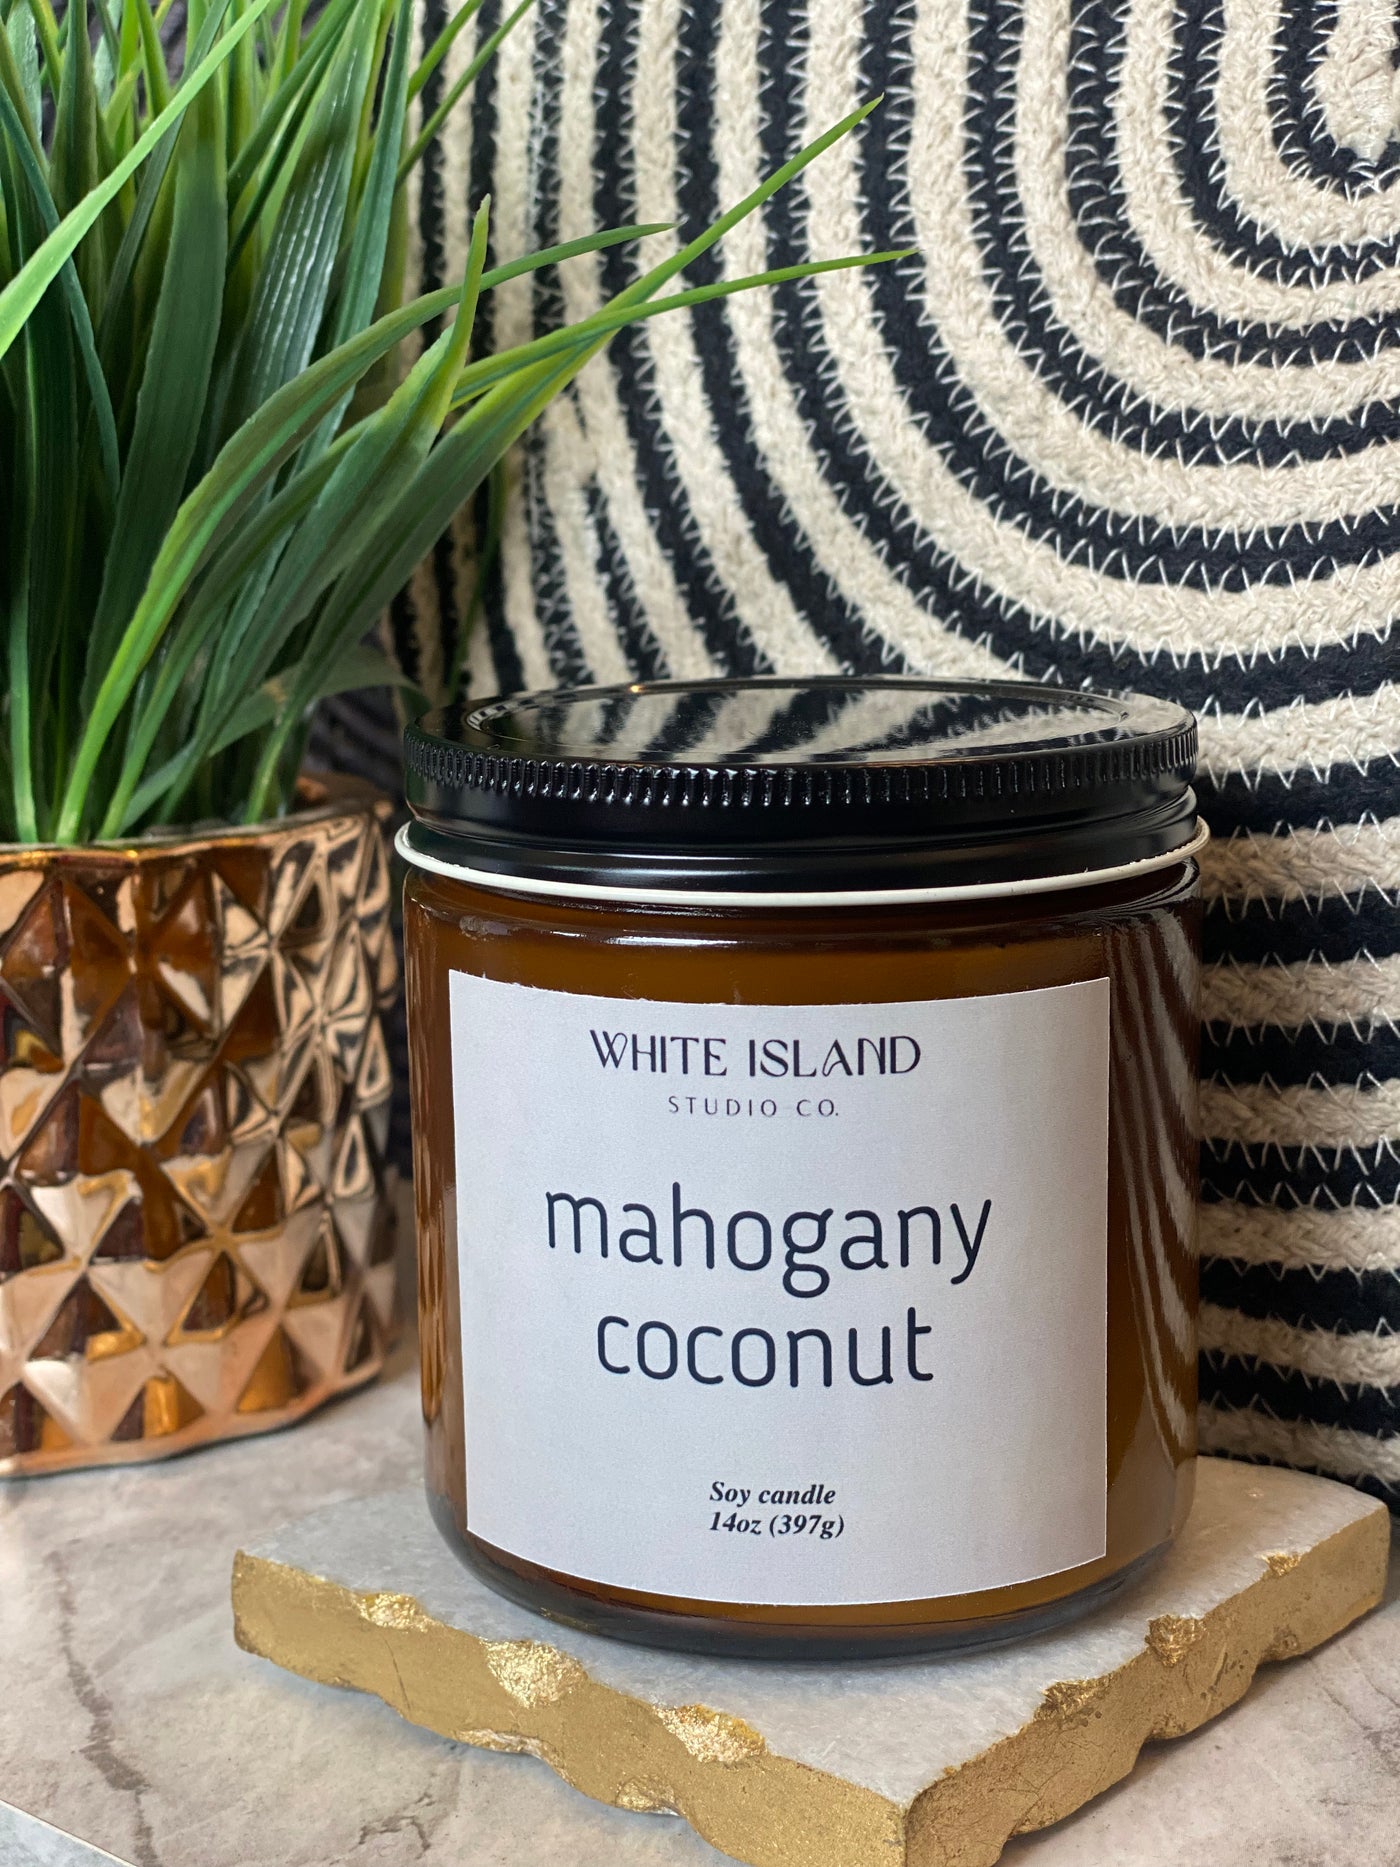 Mahogany Coconut